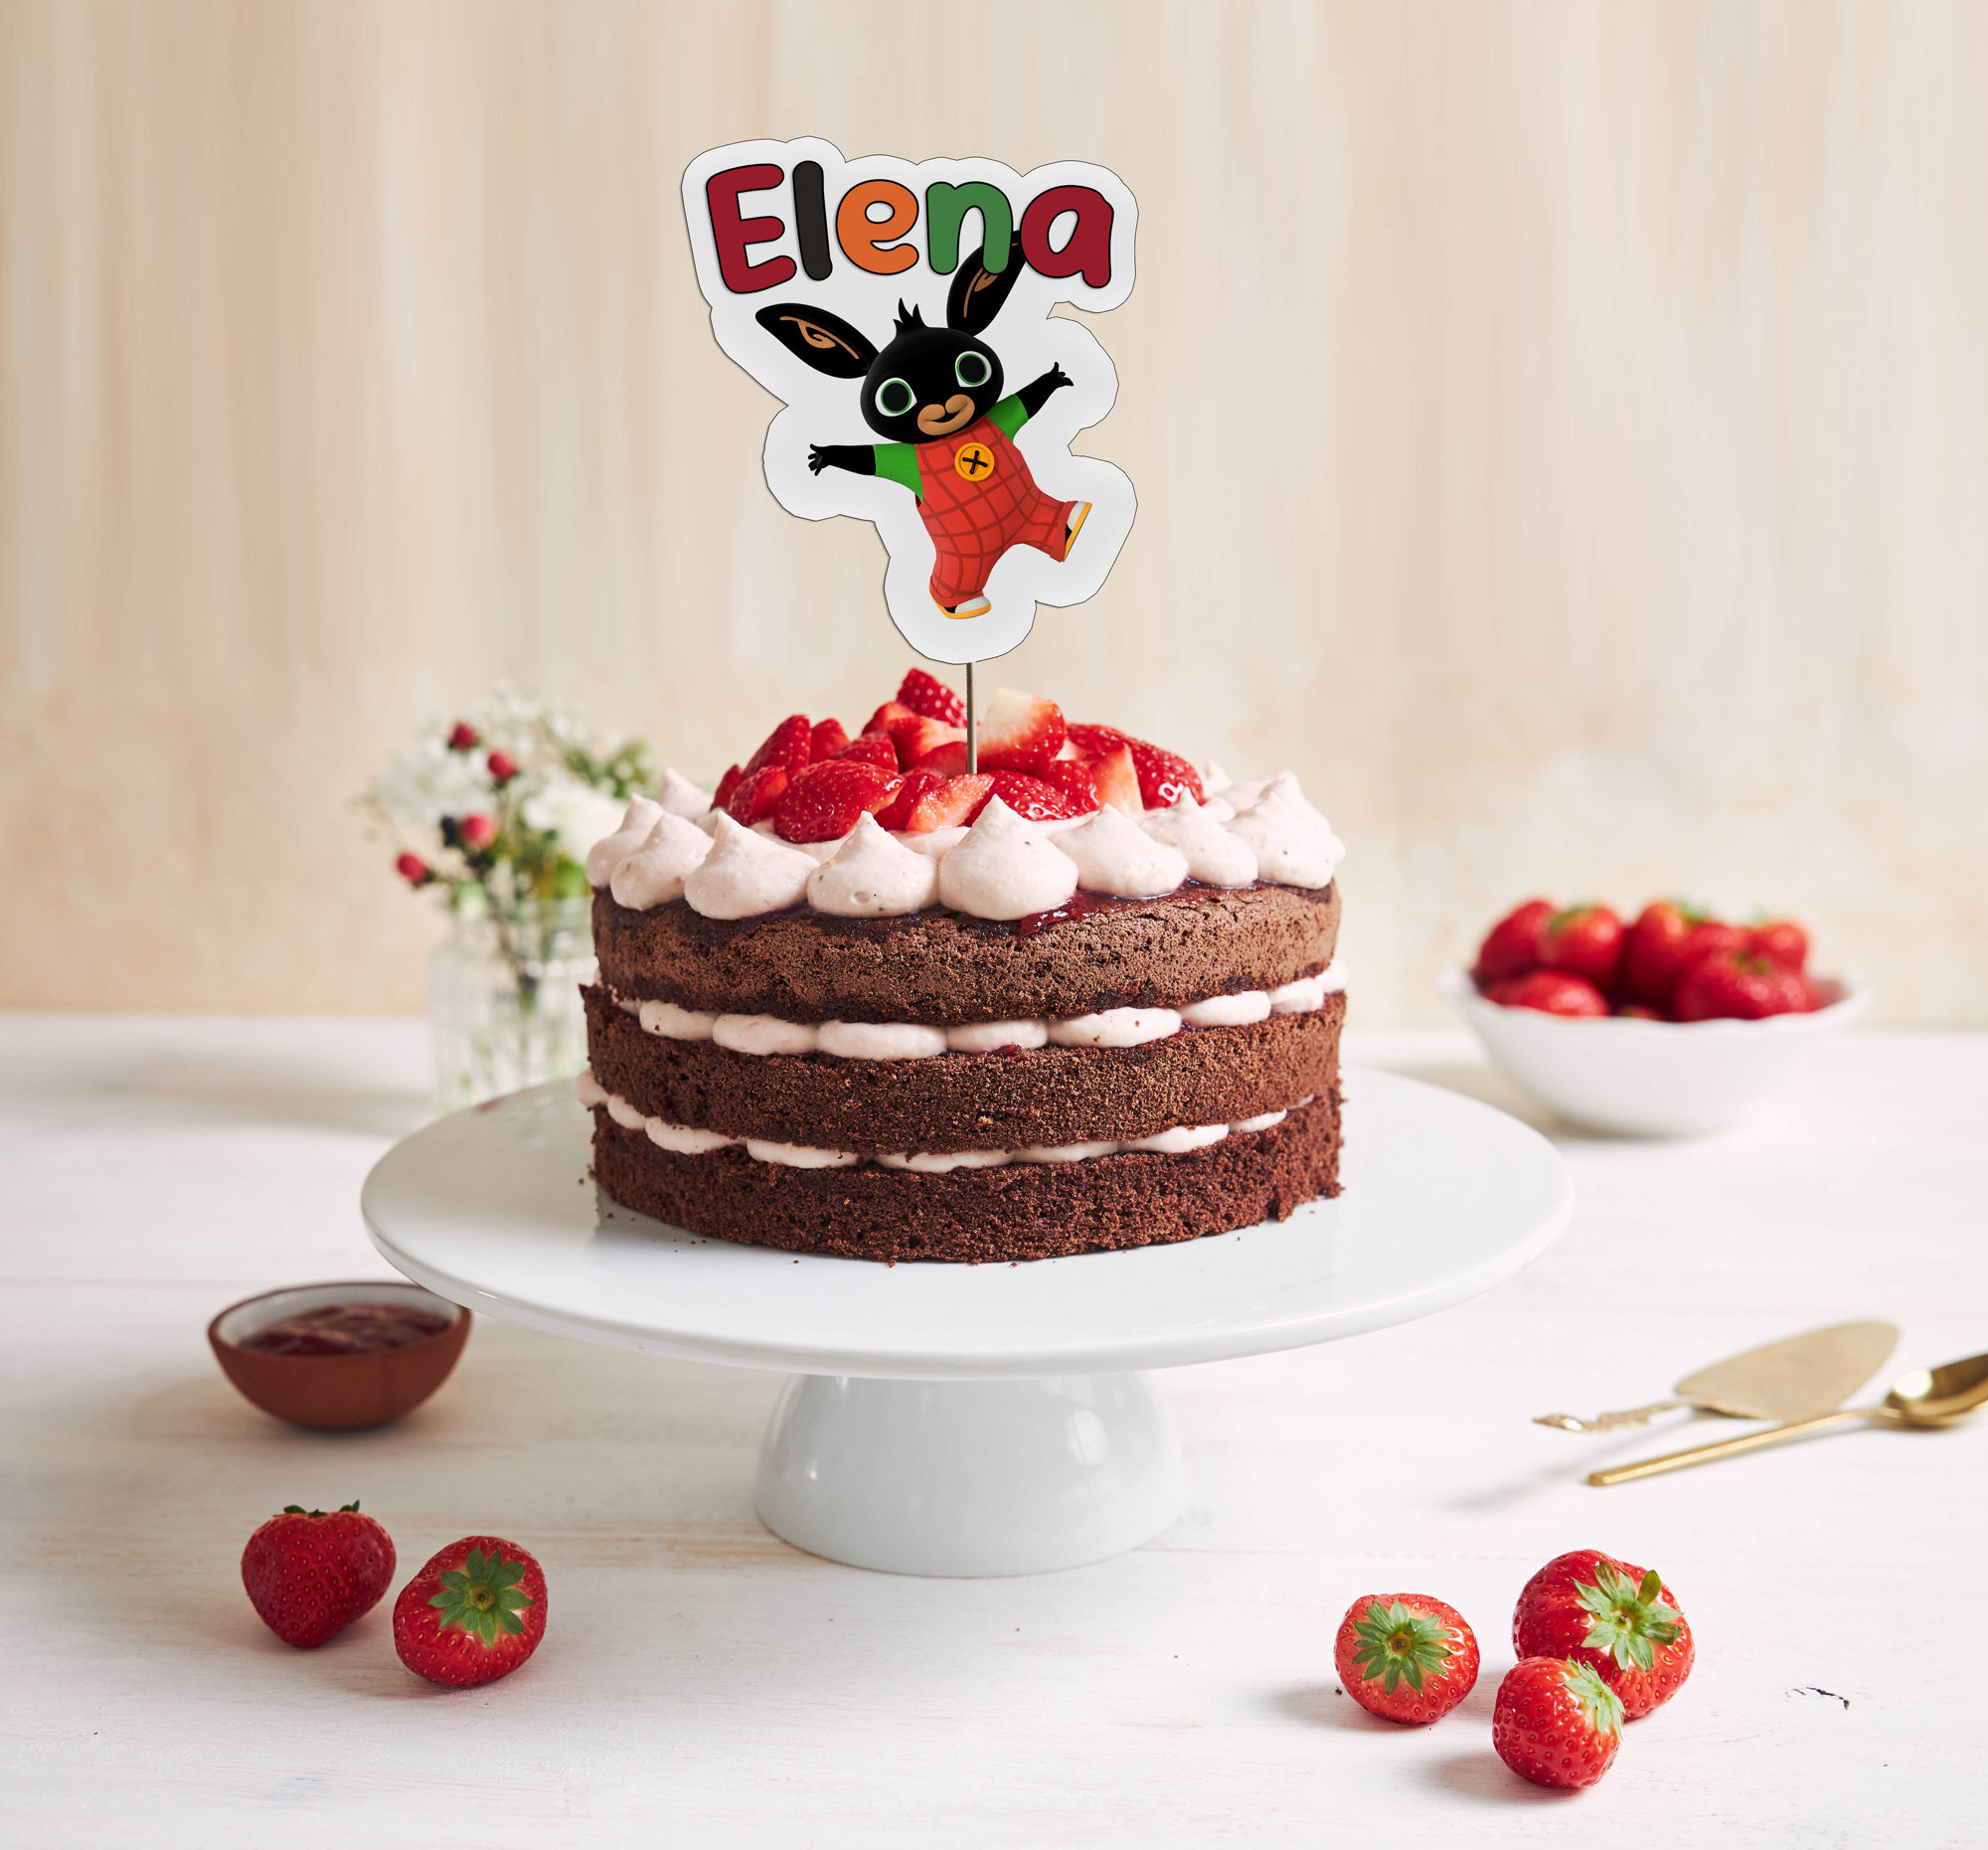 Bing cake topper -  Italia